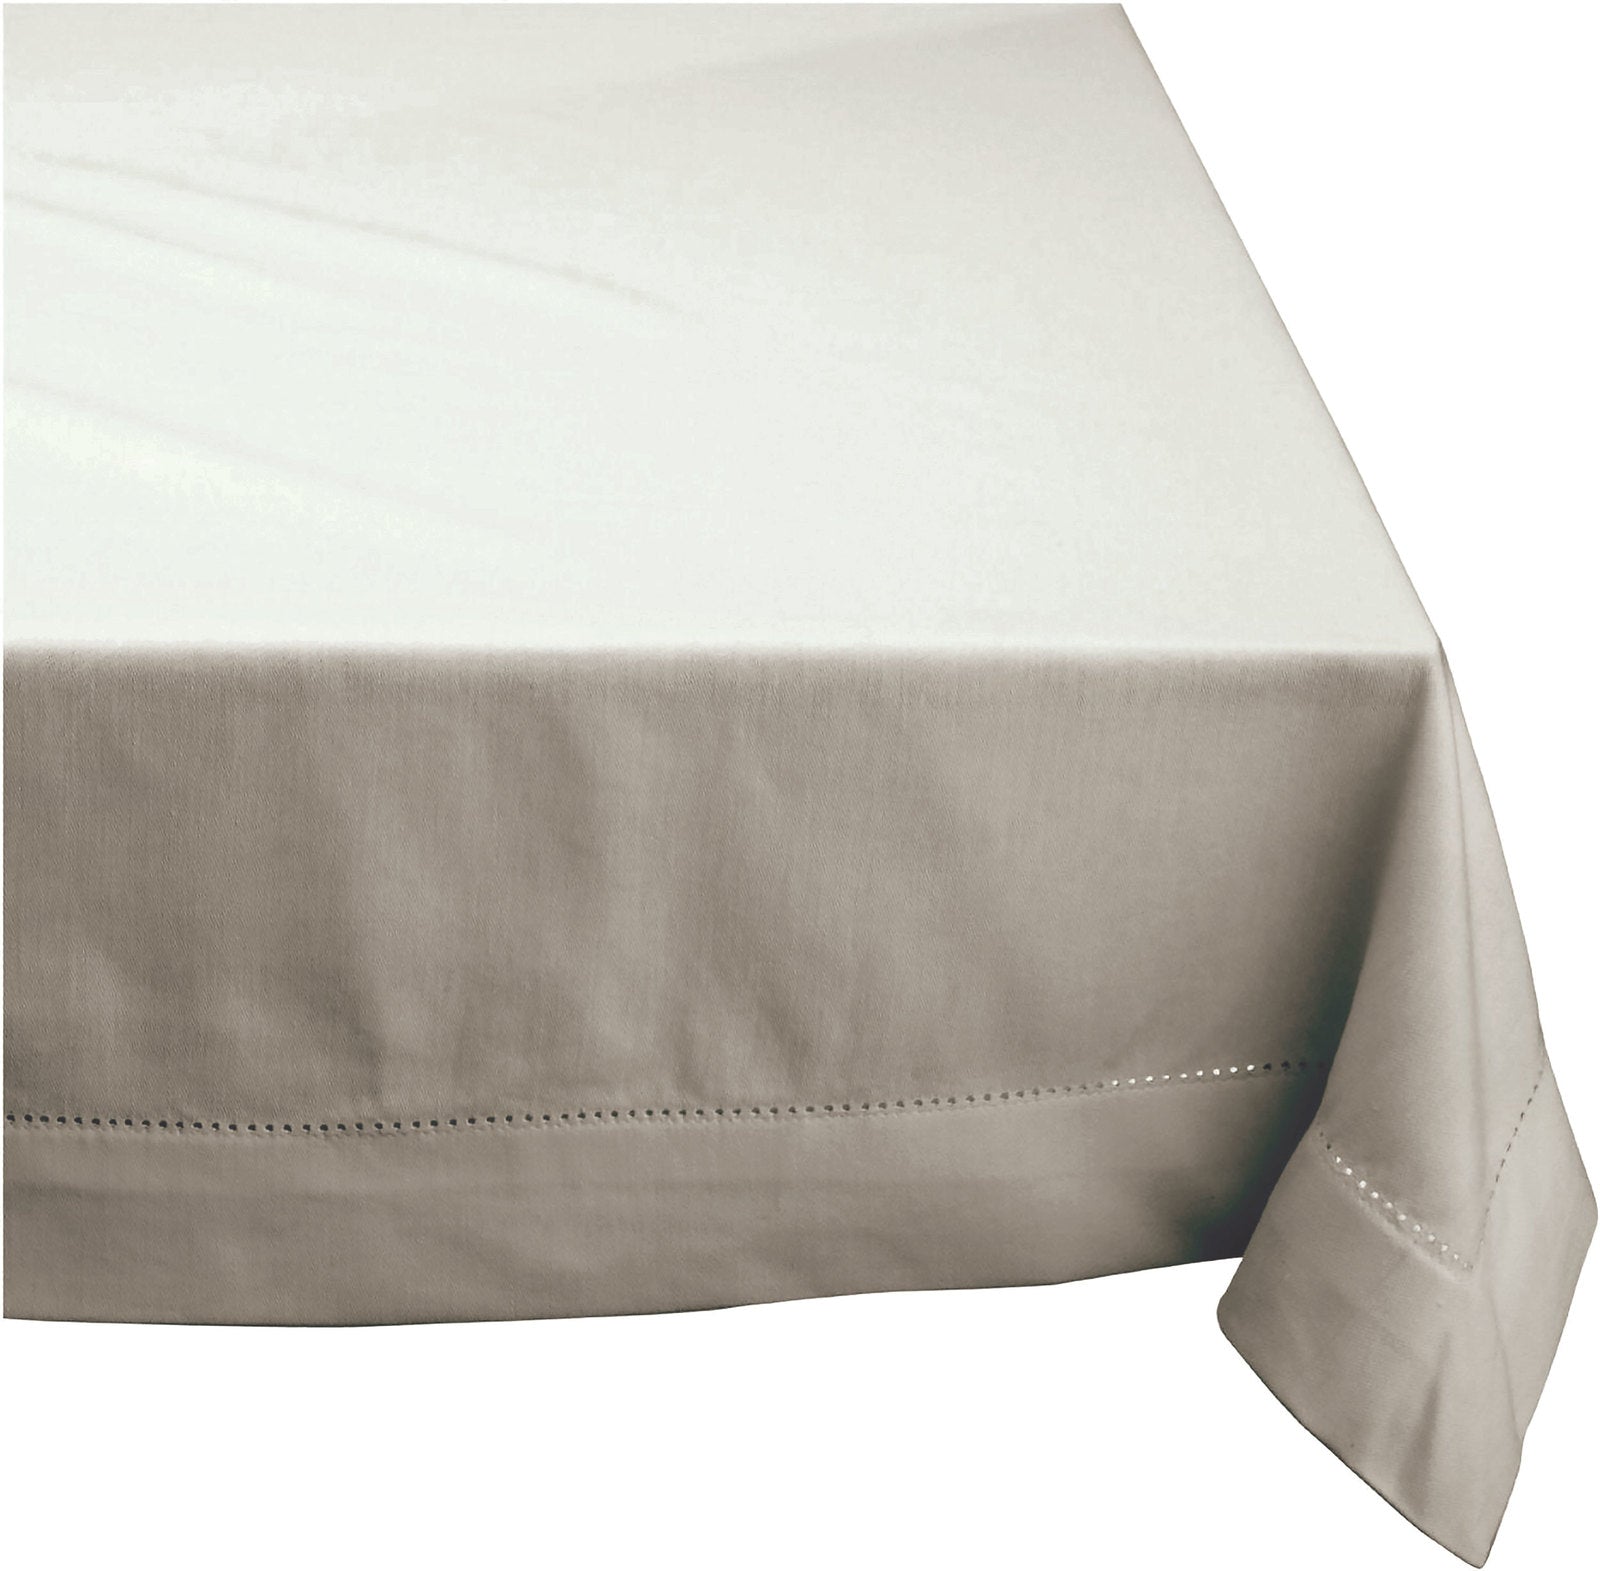 Elegant Hemstitch Tablecloth - 100% Cotton - 150x230cm in Grey